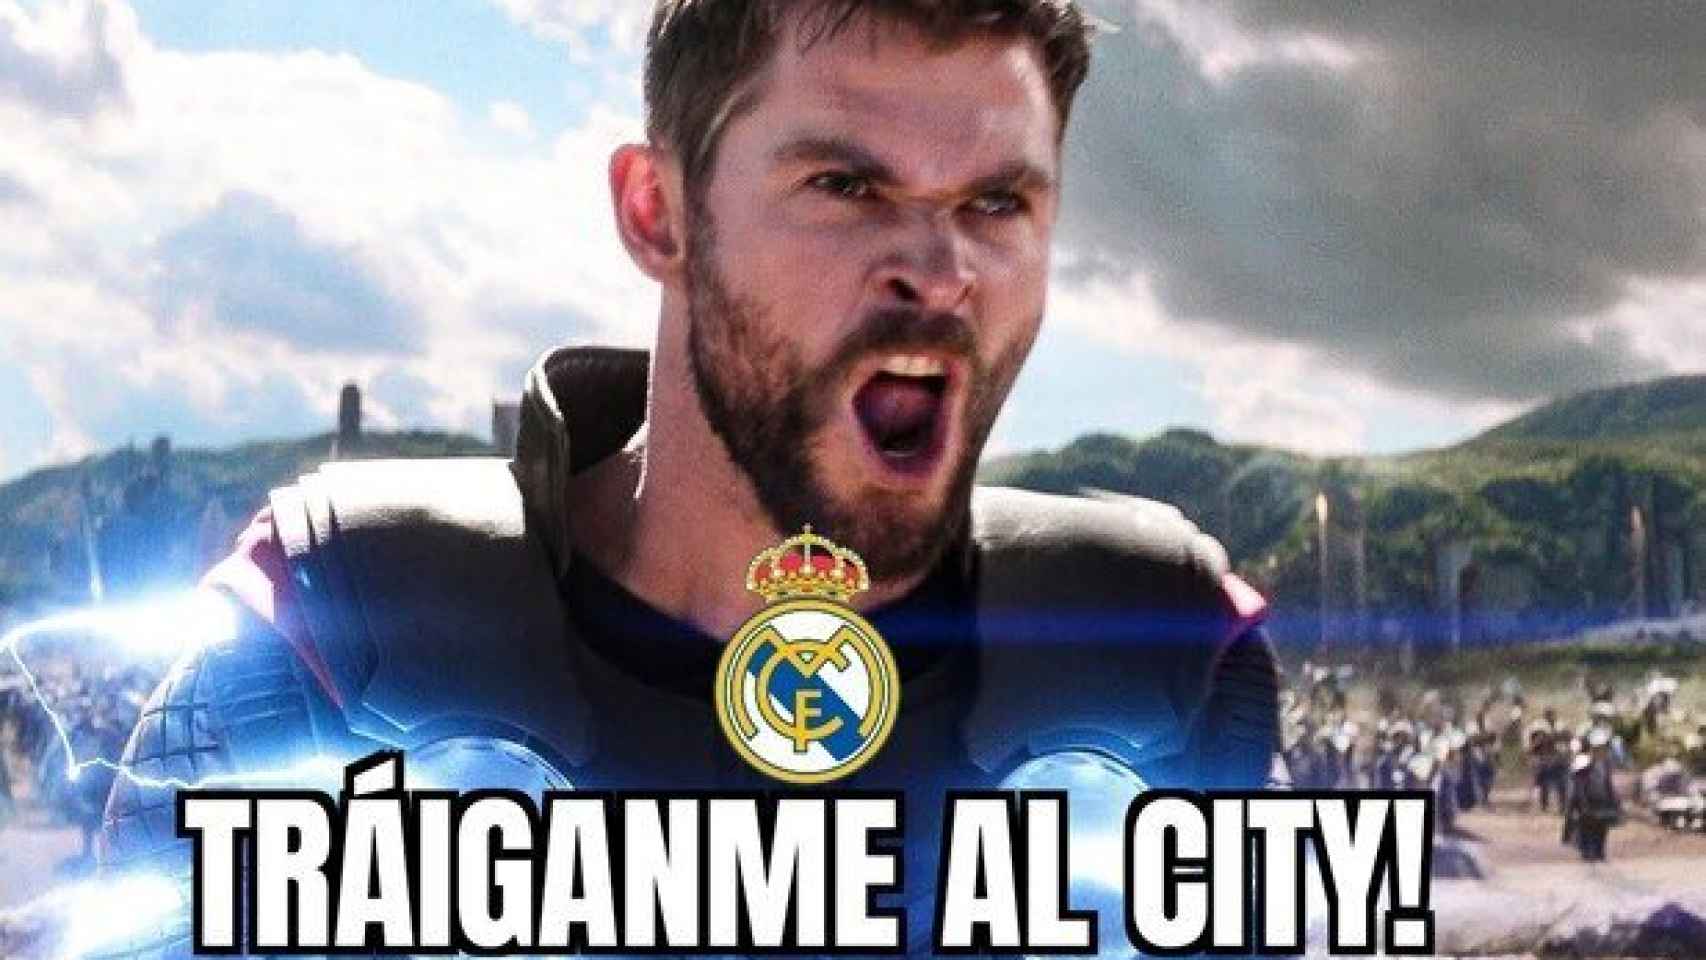 Meme de La Liga 35 del Real Madrid